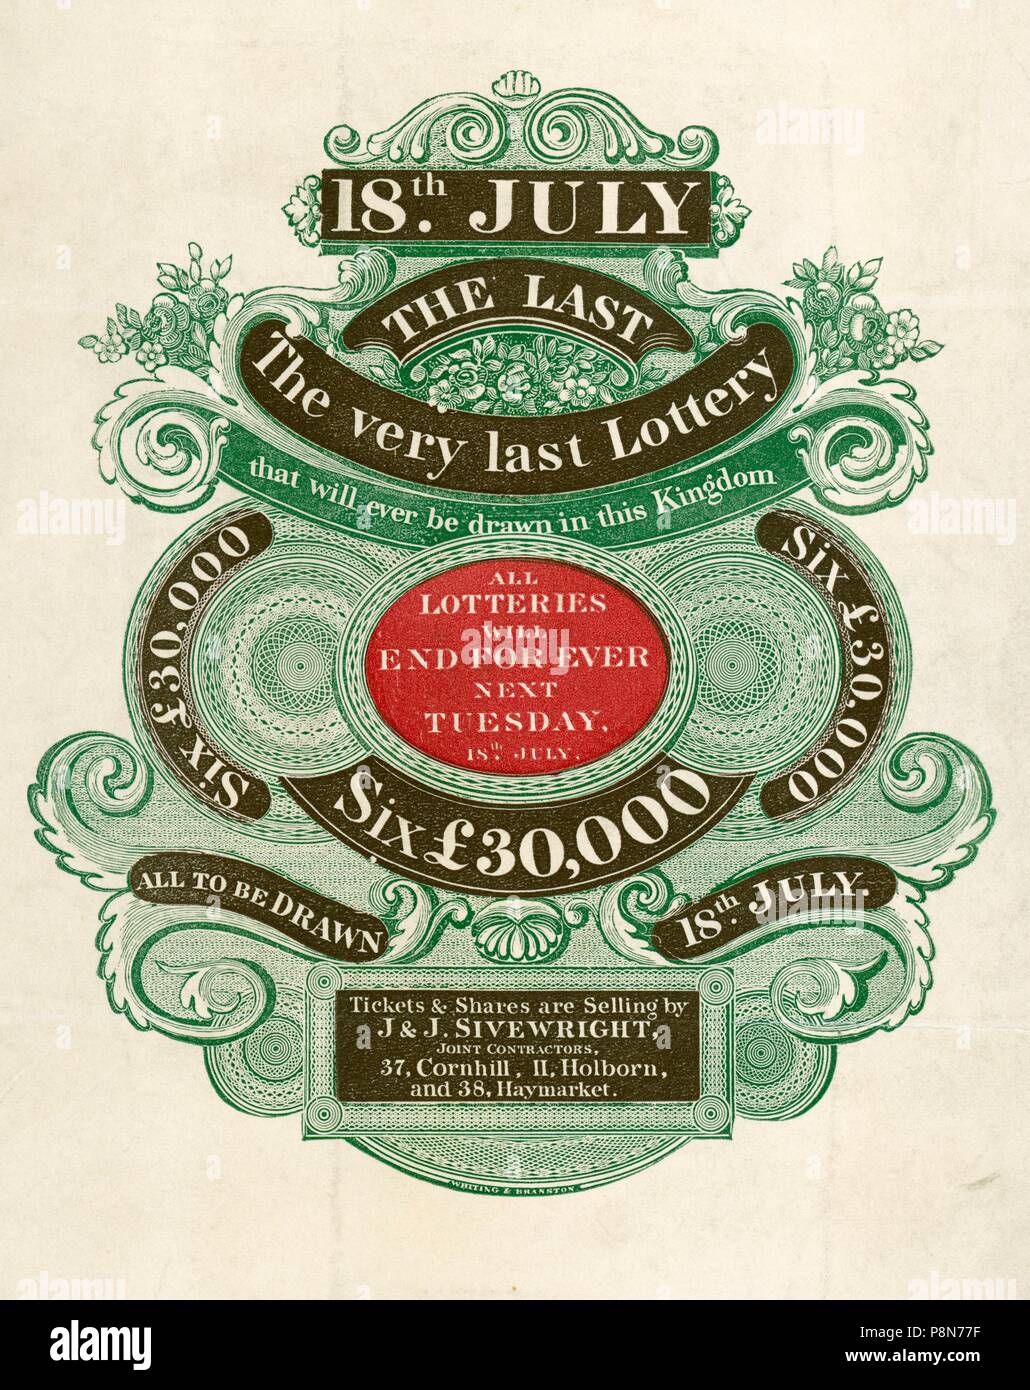 Anuncio de la última lotería que jamás será dibujado en este reino, el 18 de julio de 1826. Artista: Desconocido. Foto de stock